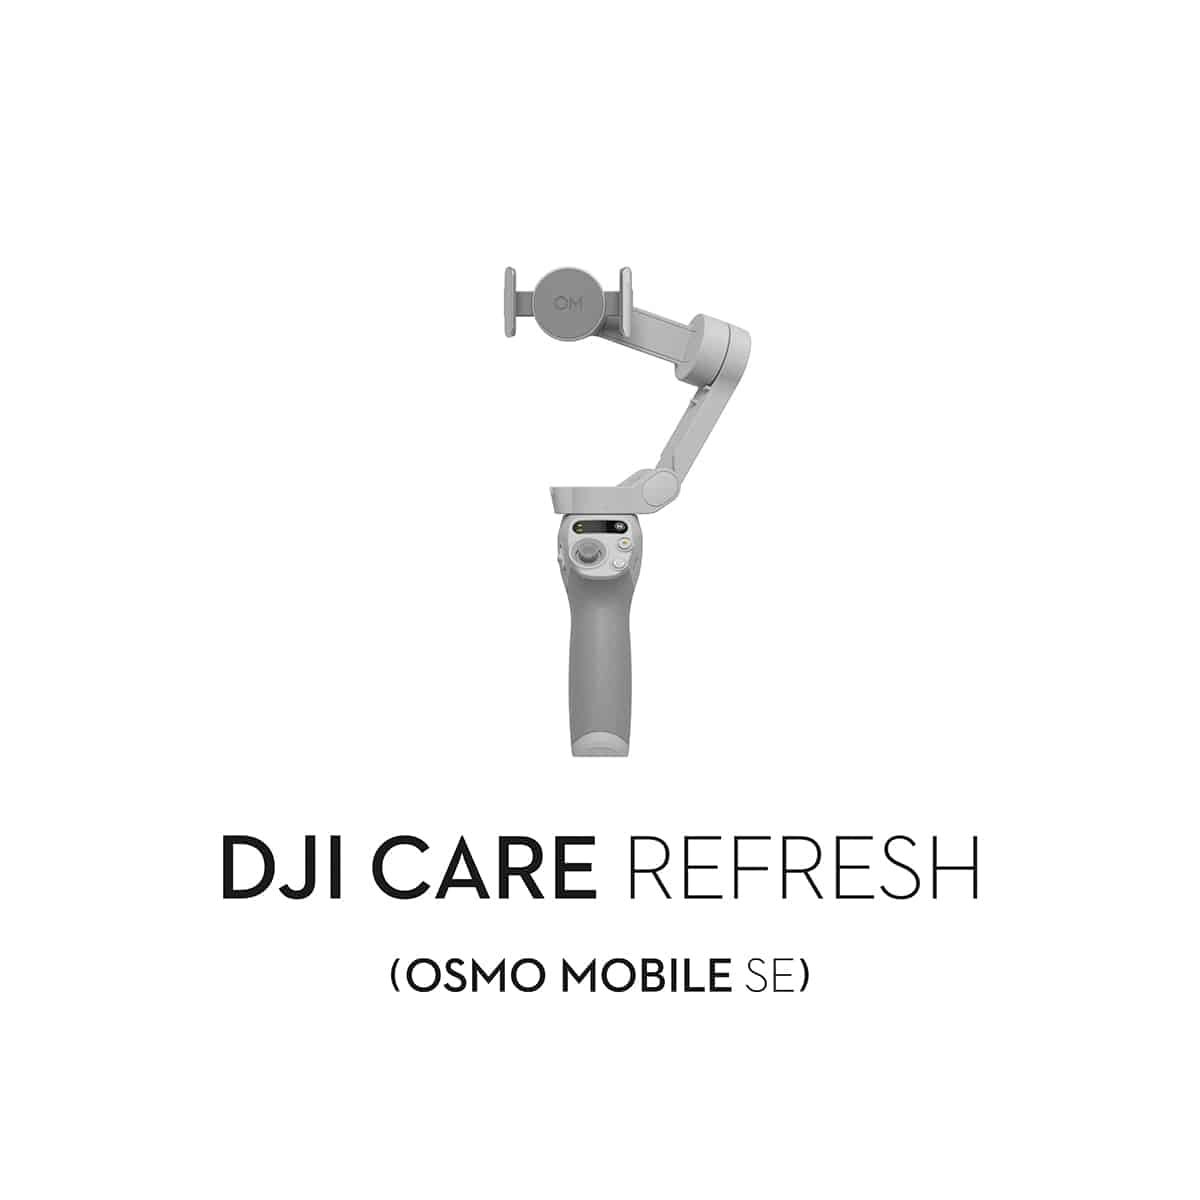 care-refresh-mobile-se